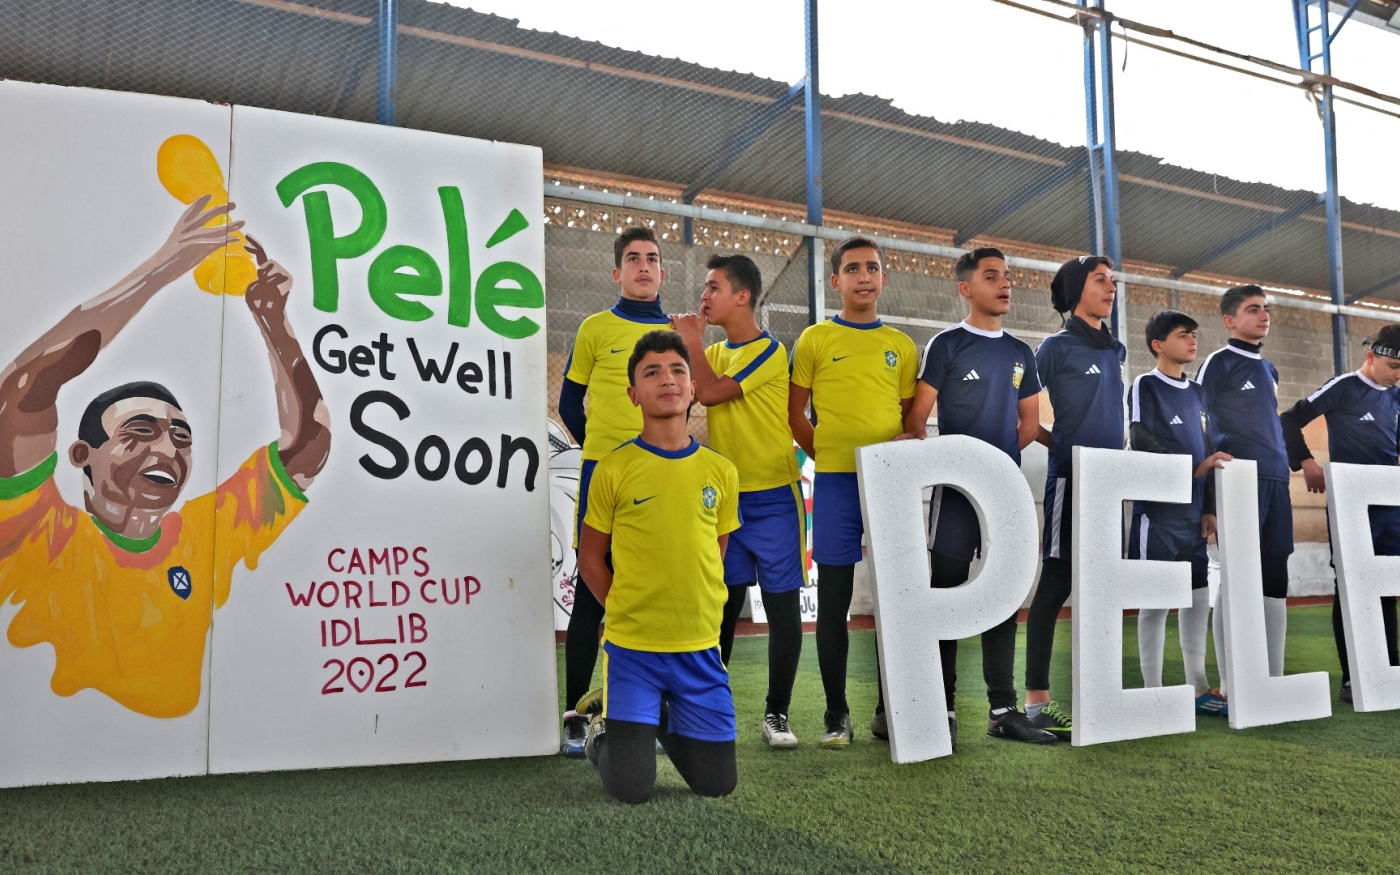 Des enfants syriens déplacés rendent hommage à Pelé avant un match au stade d’Hizano, dans le nord de la province d’Idleb, le 9 décembre (AFP)